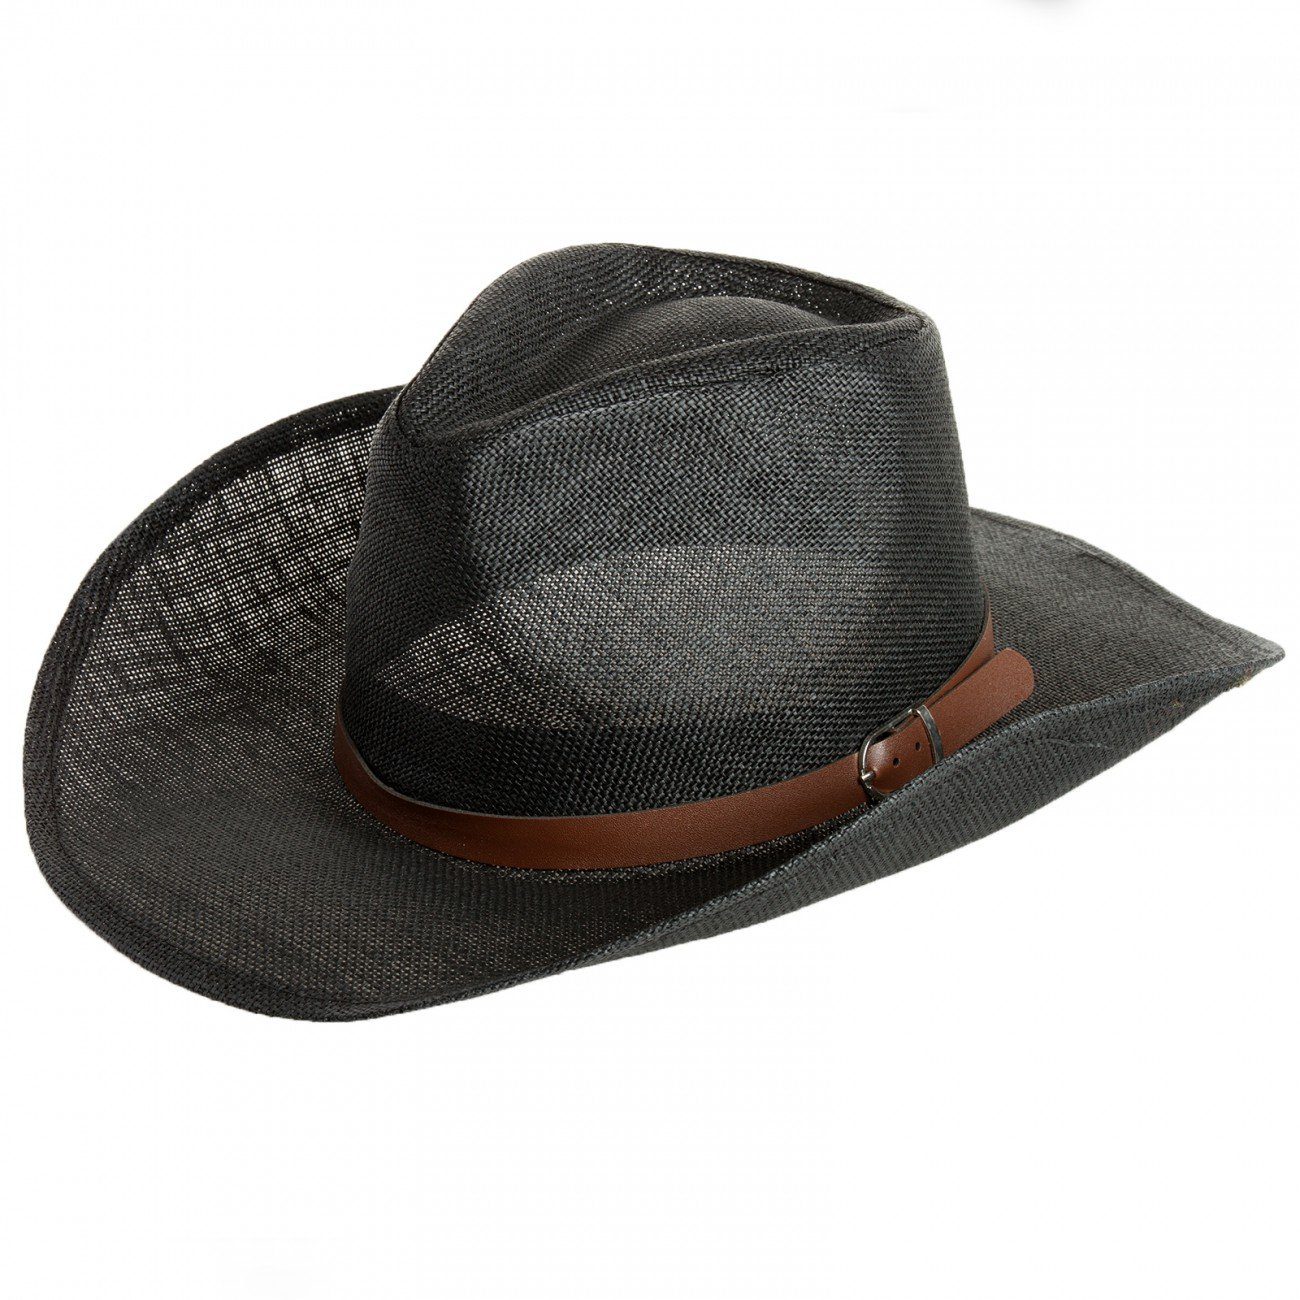 Caspar Cowboyhut HT009 Herren Cowboy Hut mit braunem Gürtelband schwarz